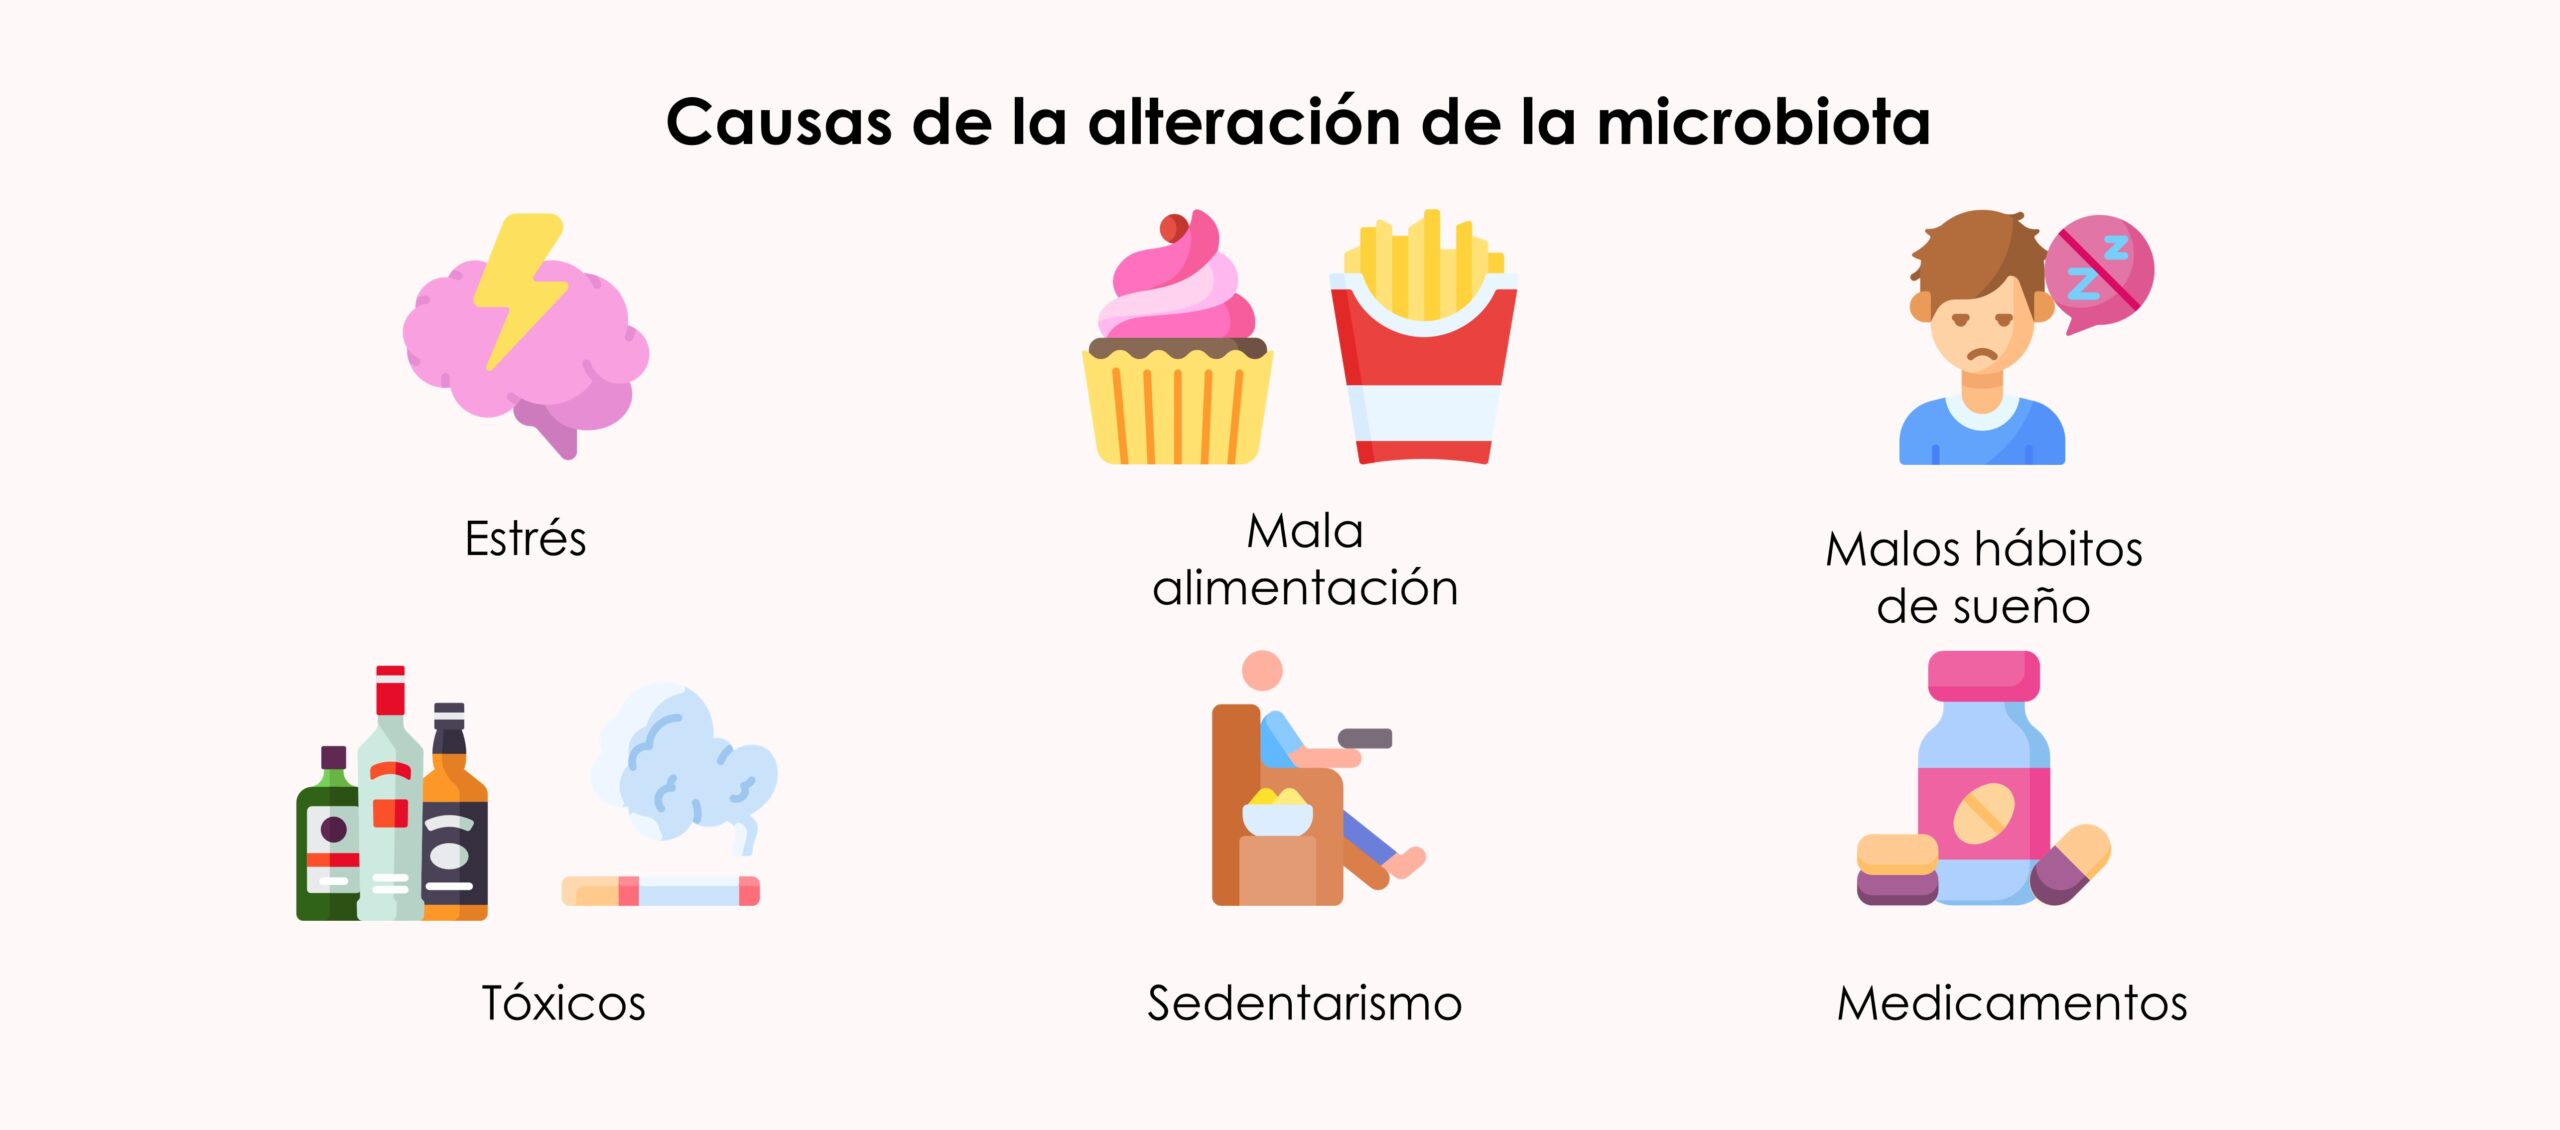 Causas de la alteración de la microbiota